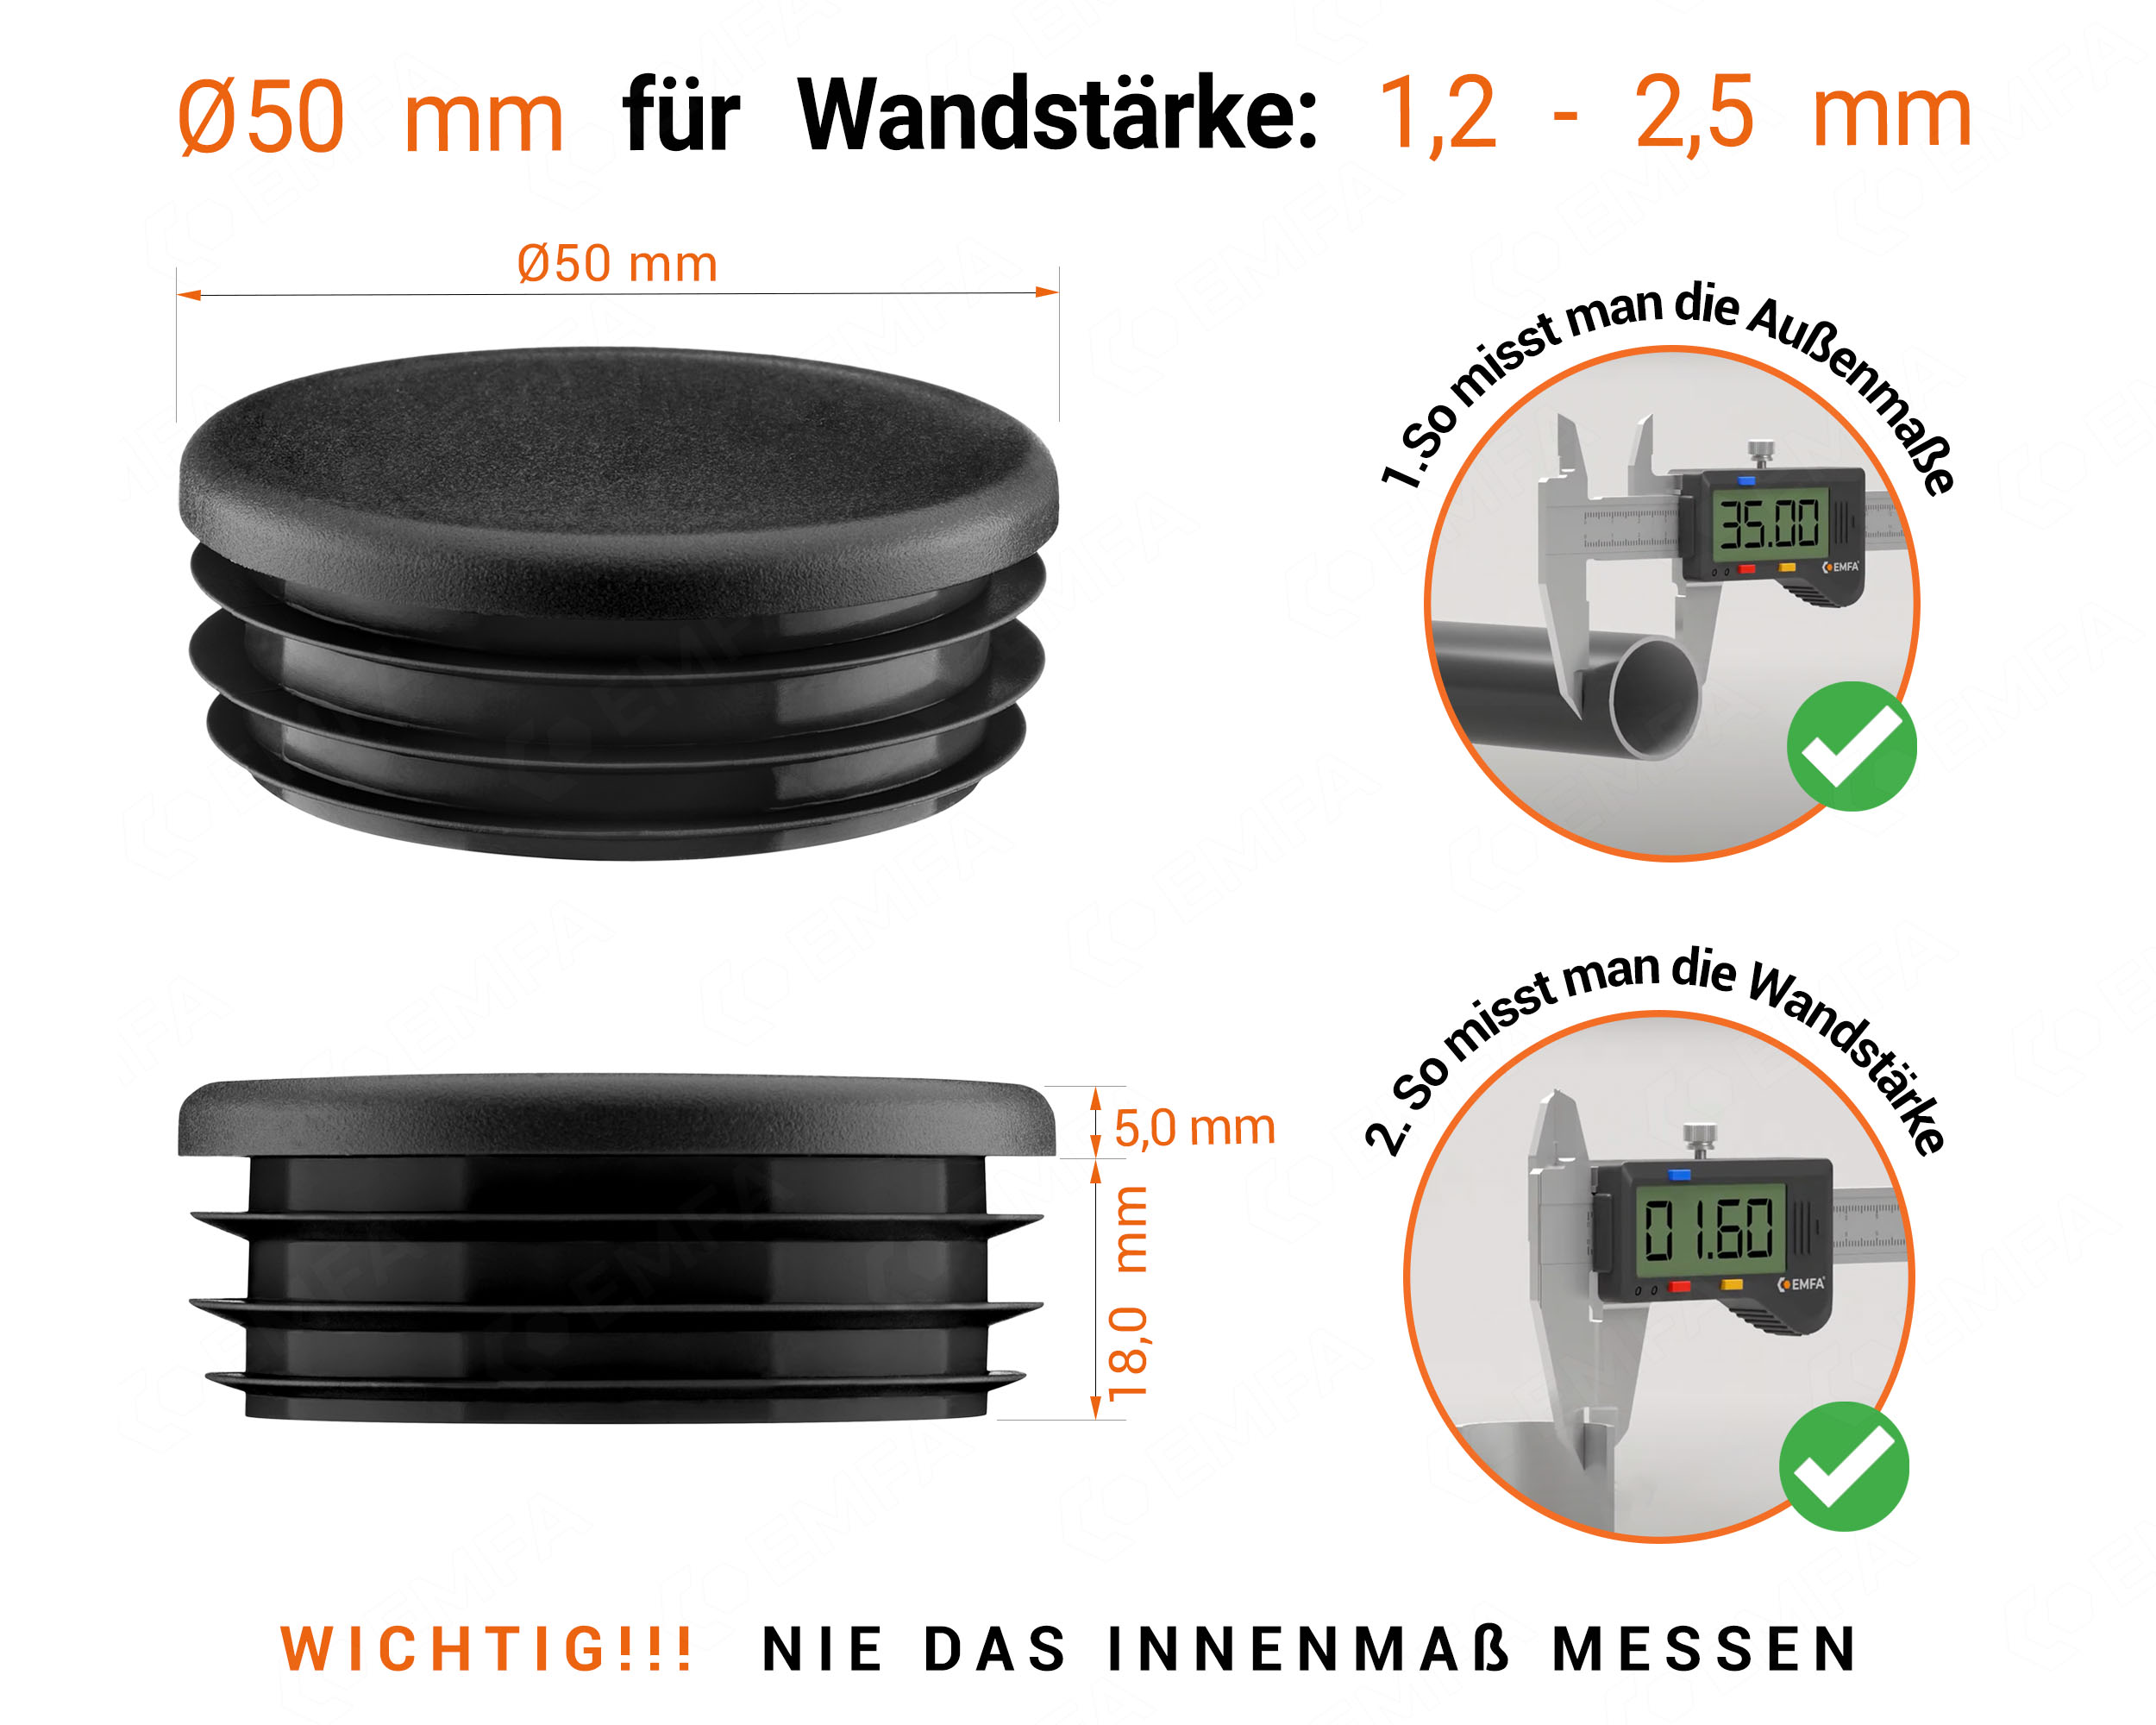 Schwarze Endkappe für Rundrohre in der Größe 50 mm mit technischen Abmessungen und Anleitung für korrekte Messung